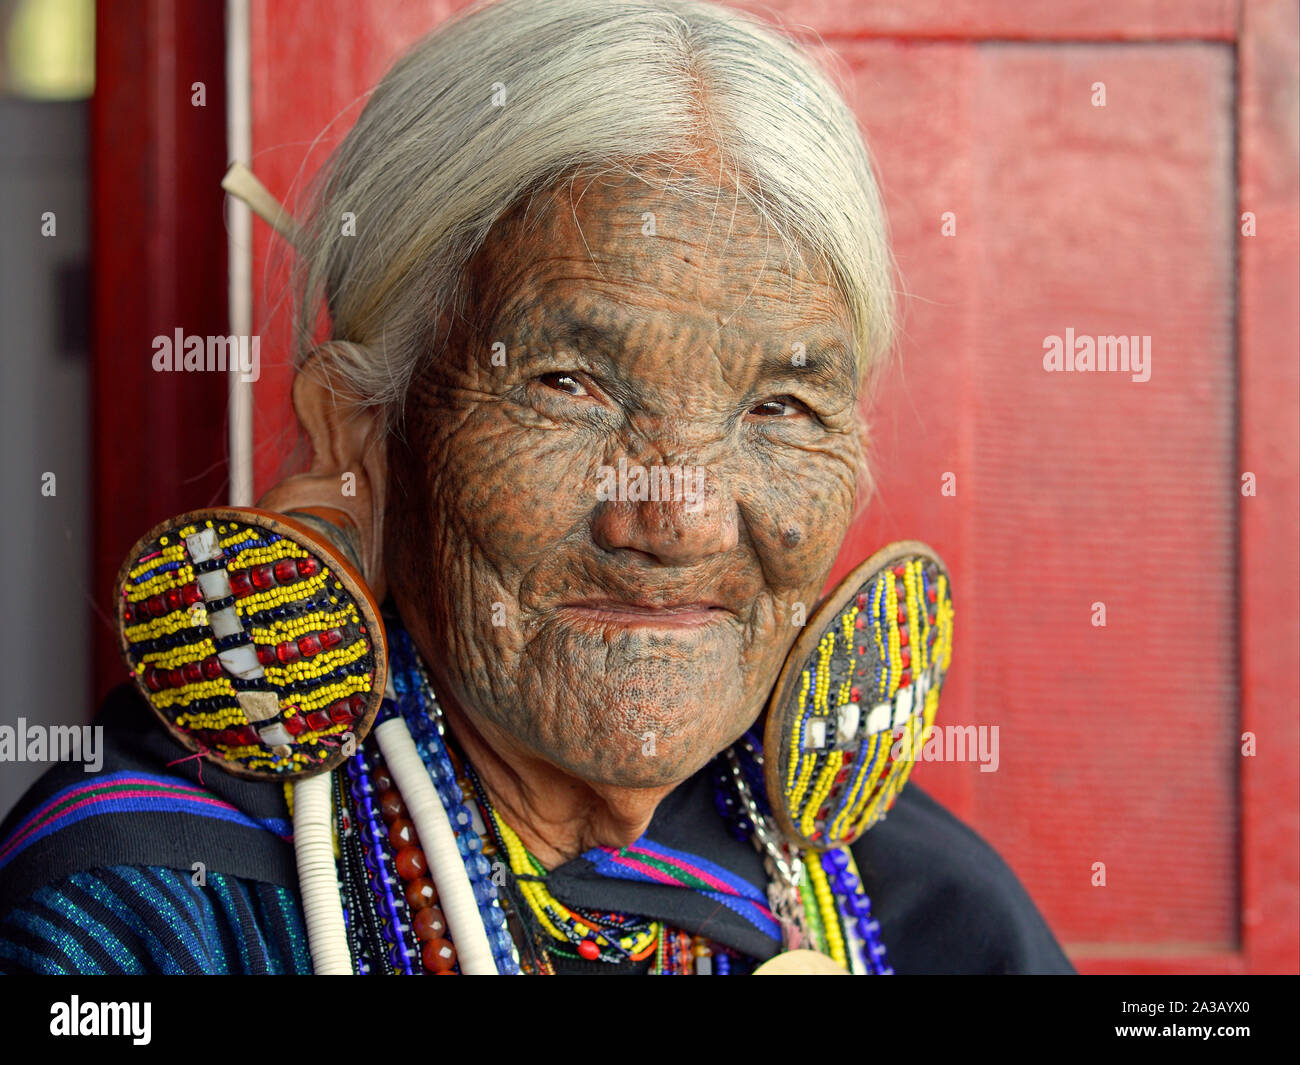 Alte Kinn Kaang Bergvolk Frau mit gepunkteten klassischen Gesichtsbehandlung Tattoo und aufwendige Tribal Ohrringe posiert für die Kamera (Kopf geschossen). Stockfoto